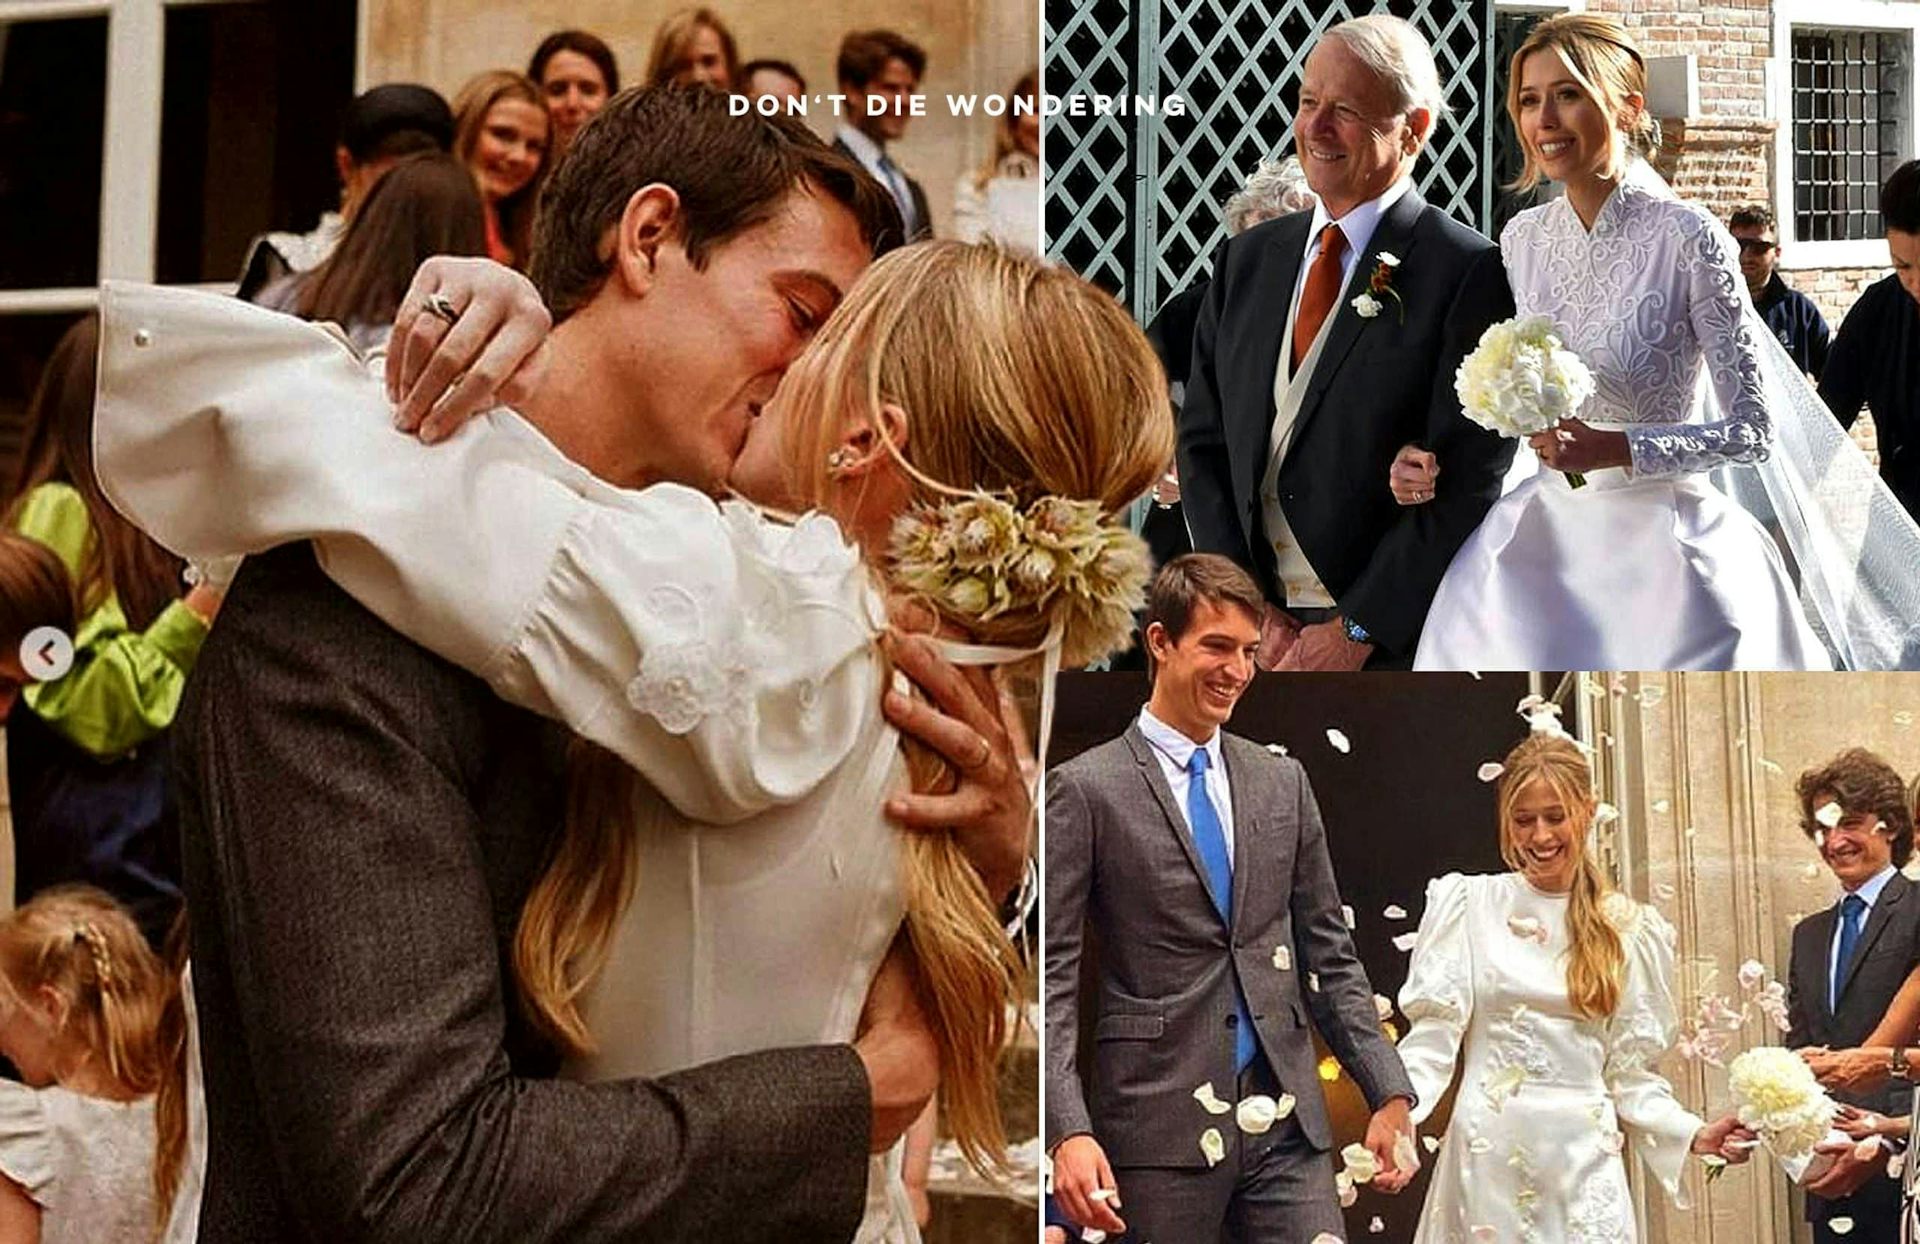 Alexandre Arnault's Wedding in Italy, October 2021. : r/GoodAssSub